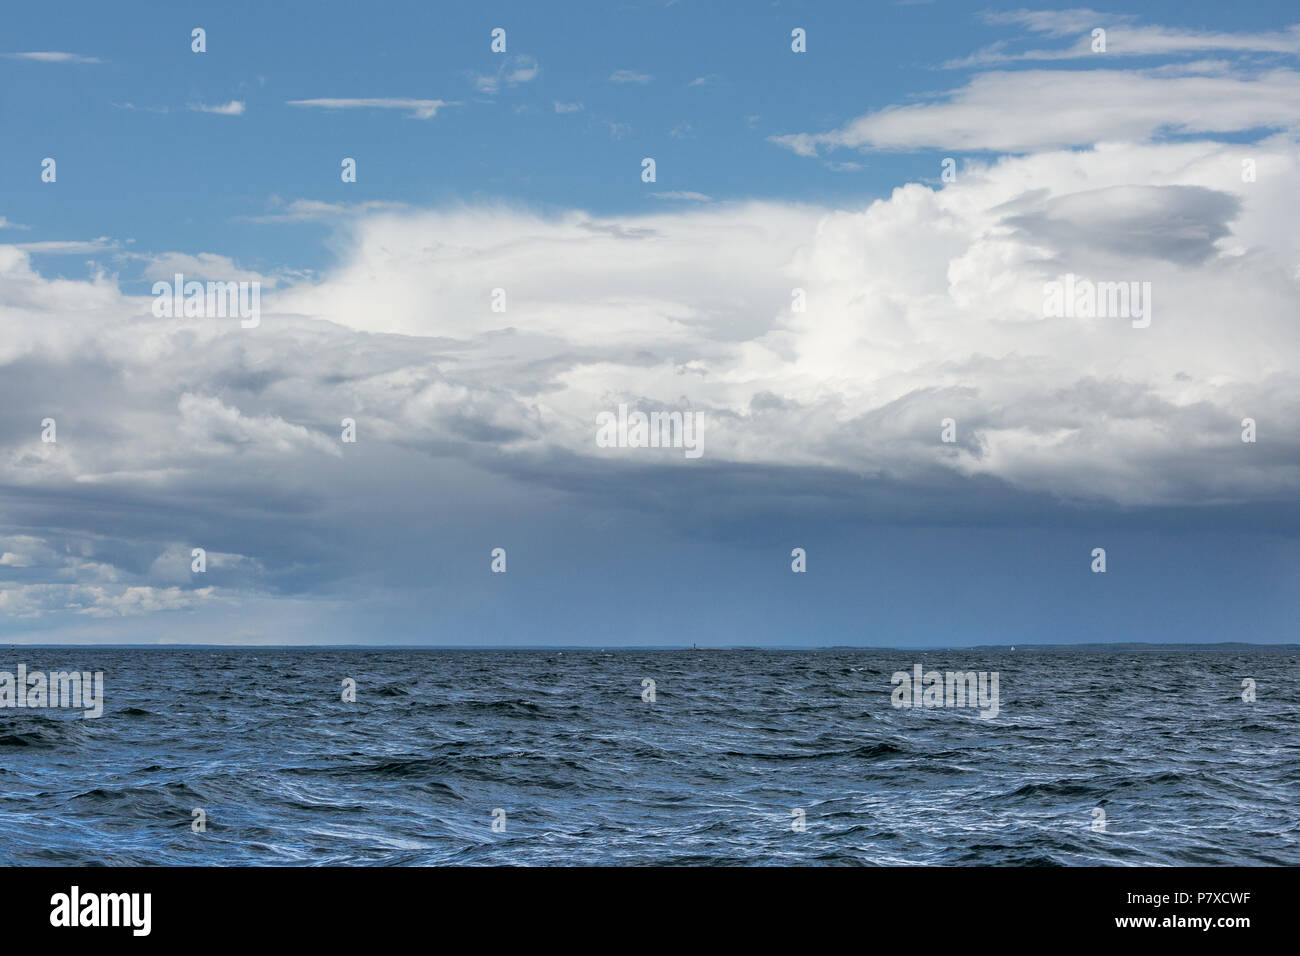 Un faro en el mar, con el espectacular cielo. Foto de stock